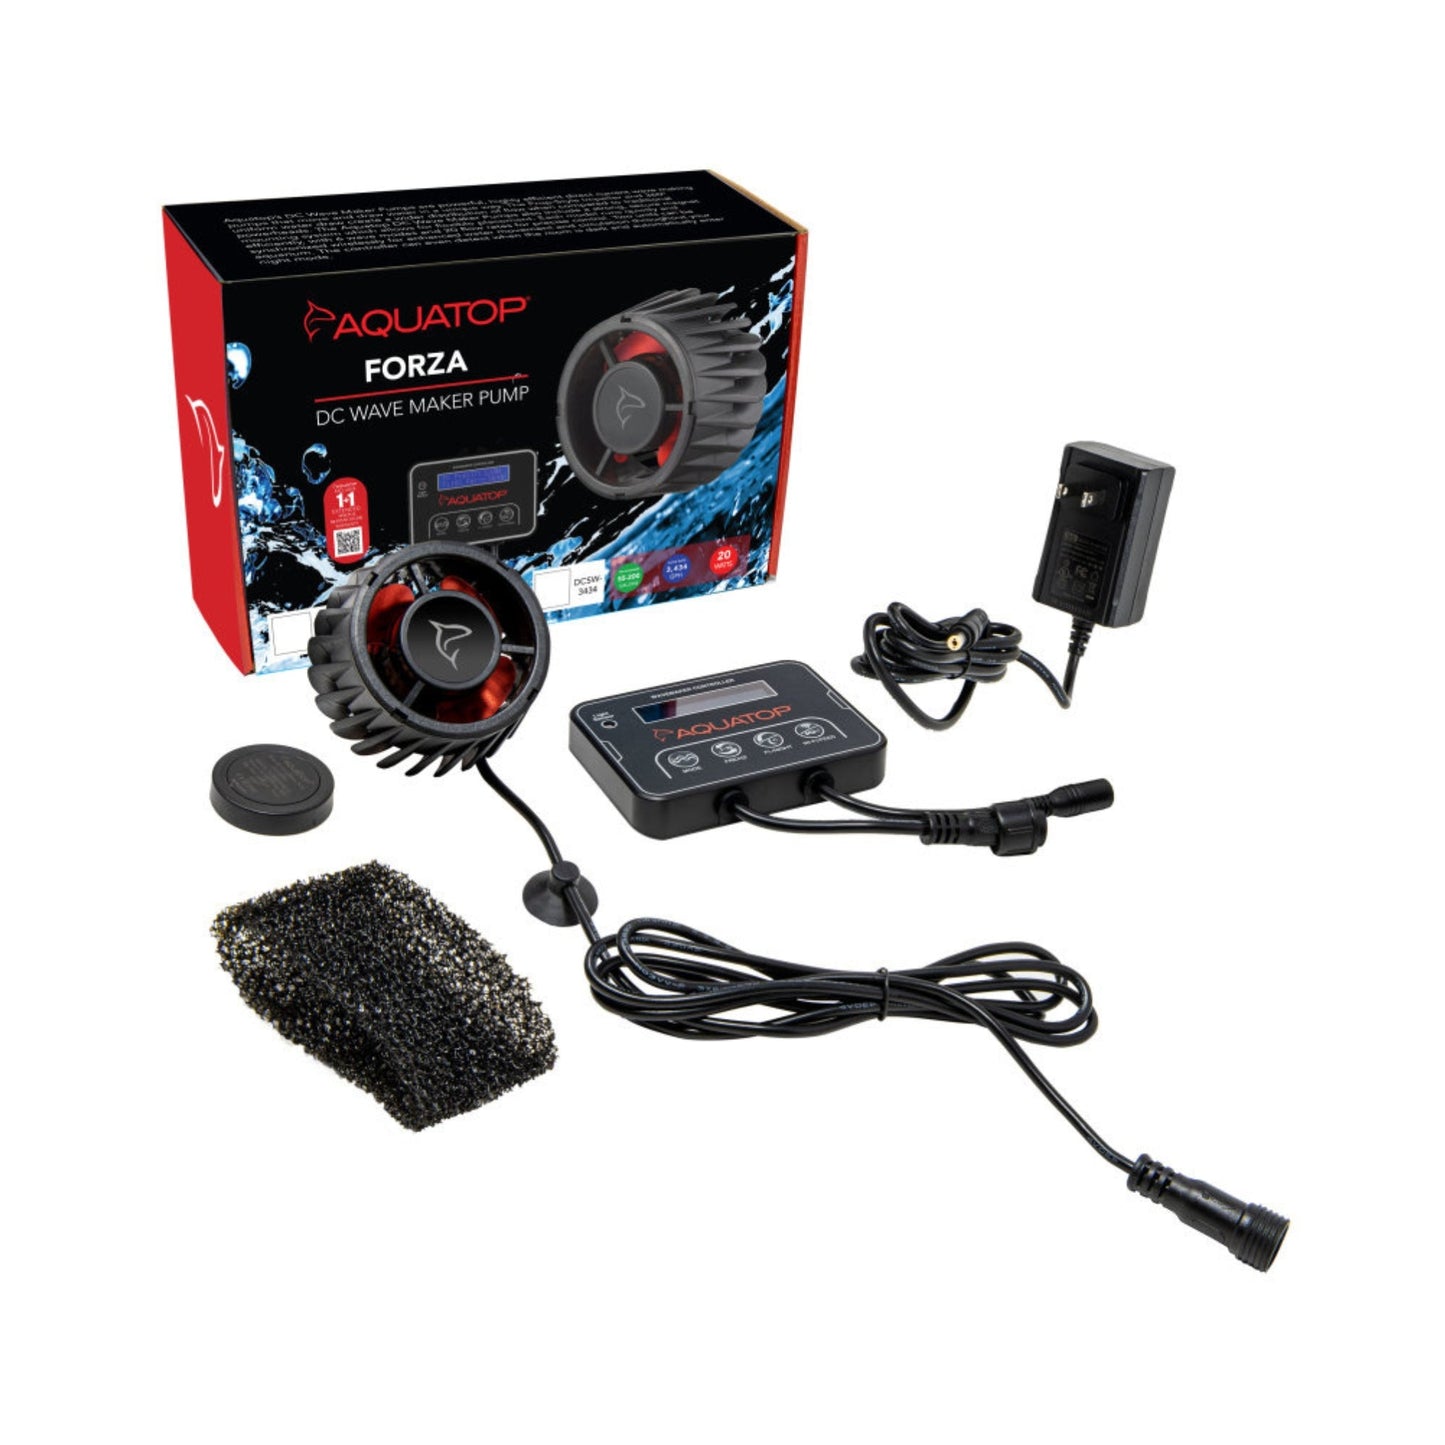 Aquatop Forza DC Wave Maker Pump 1ea/20 W, 3434 GPH